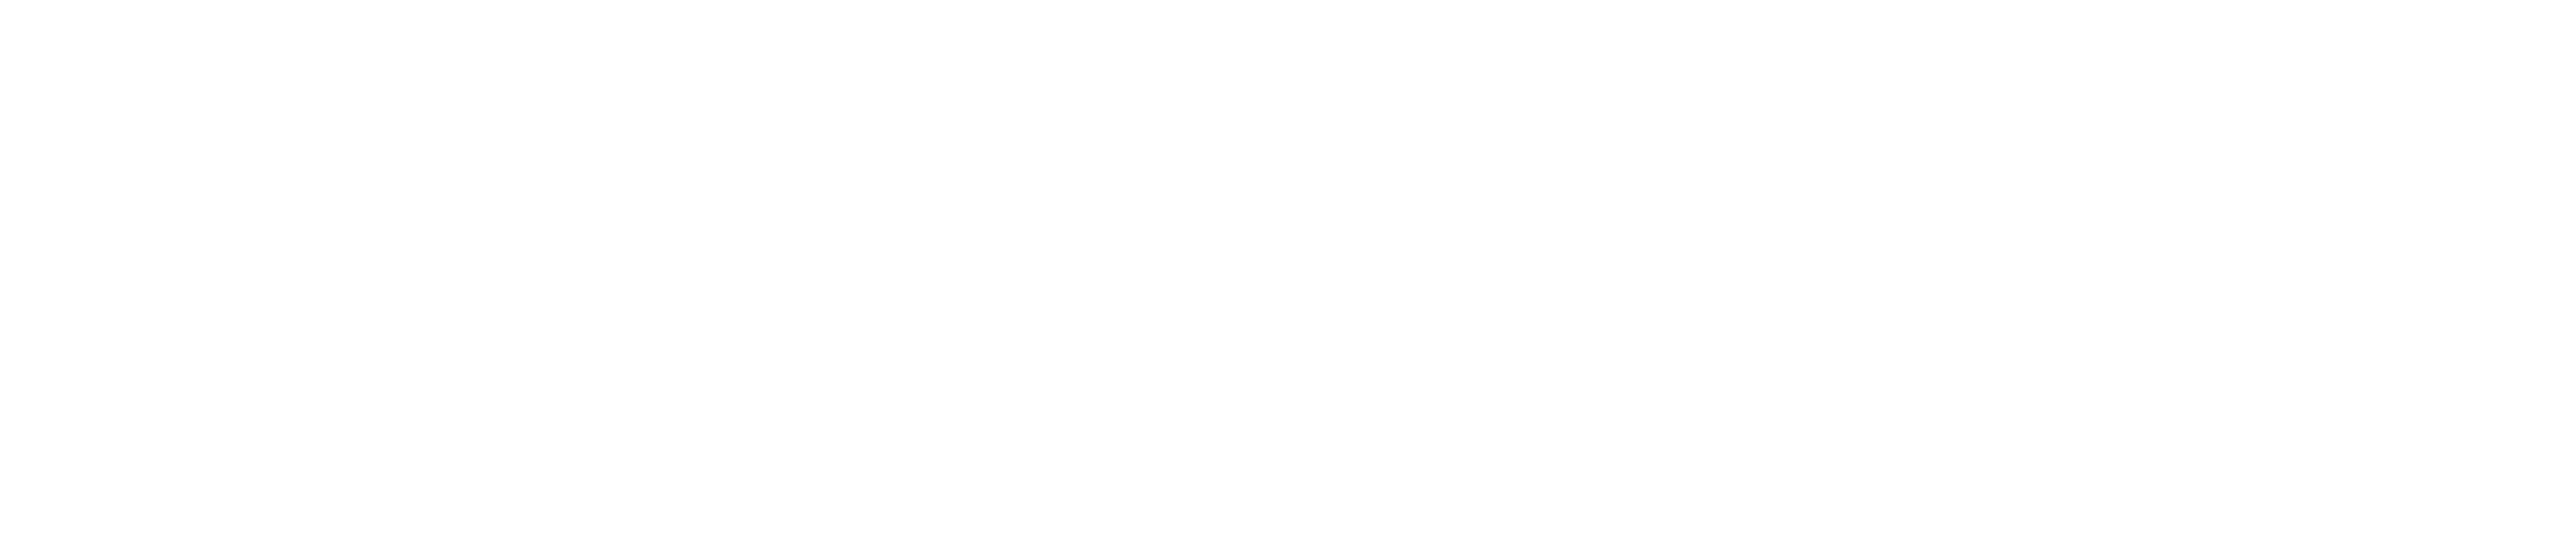 Unilin_MarketingCom_Interior_Logo_Screen_Neg_RGB.png